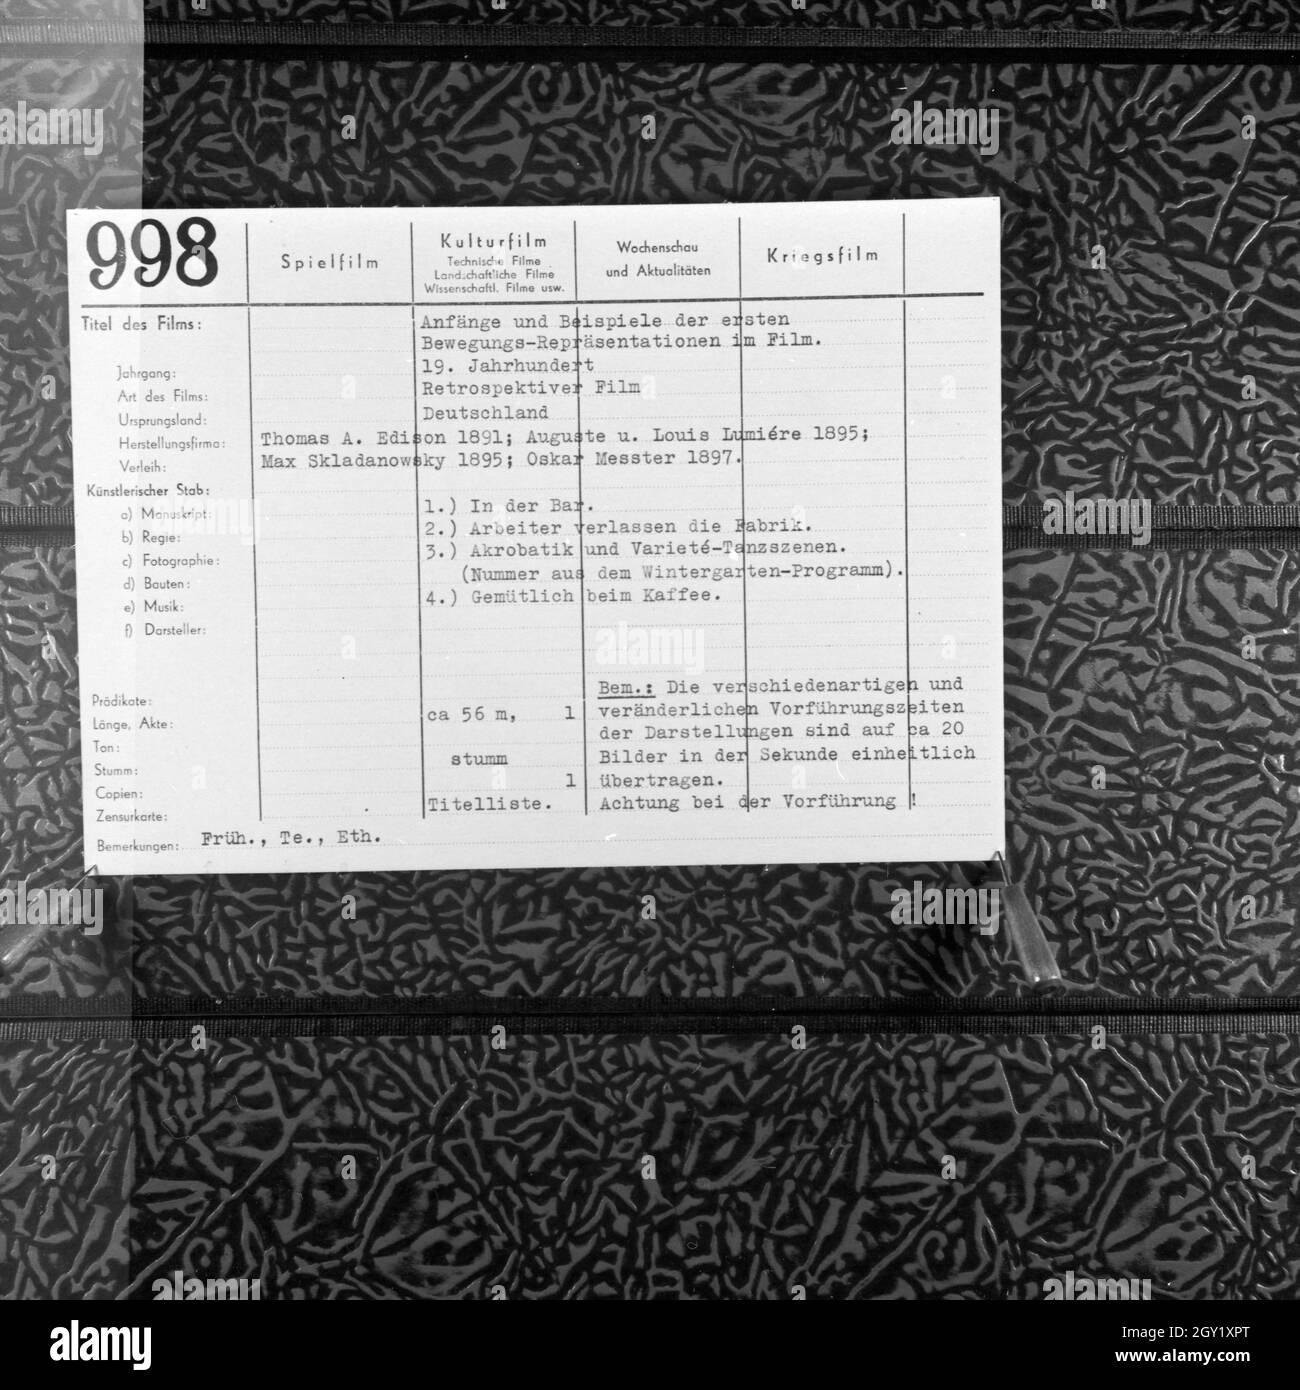 Reproduktion einer Filmlaufkarte für cinematographische Frühwerke, Deutschland 1930er Jahr. Reproduktion von einem zensor Karte für frühe exmaples der Kinematografie, Deutschland 1930. Stockfoto